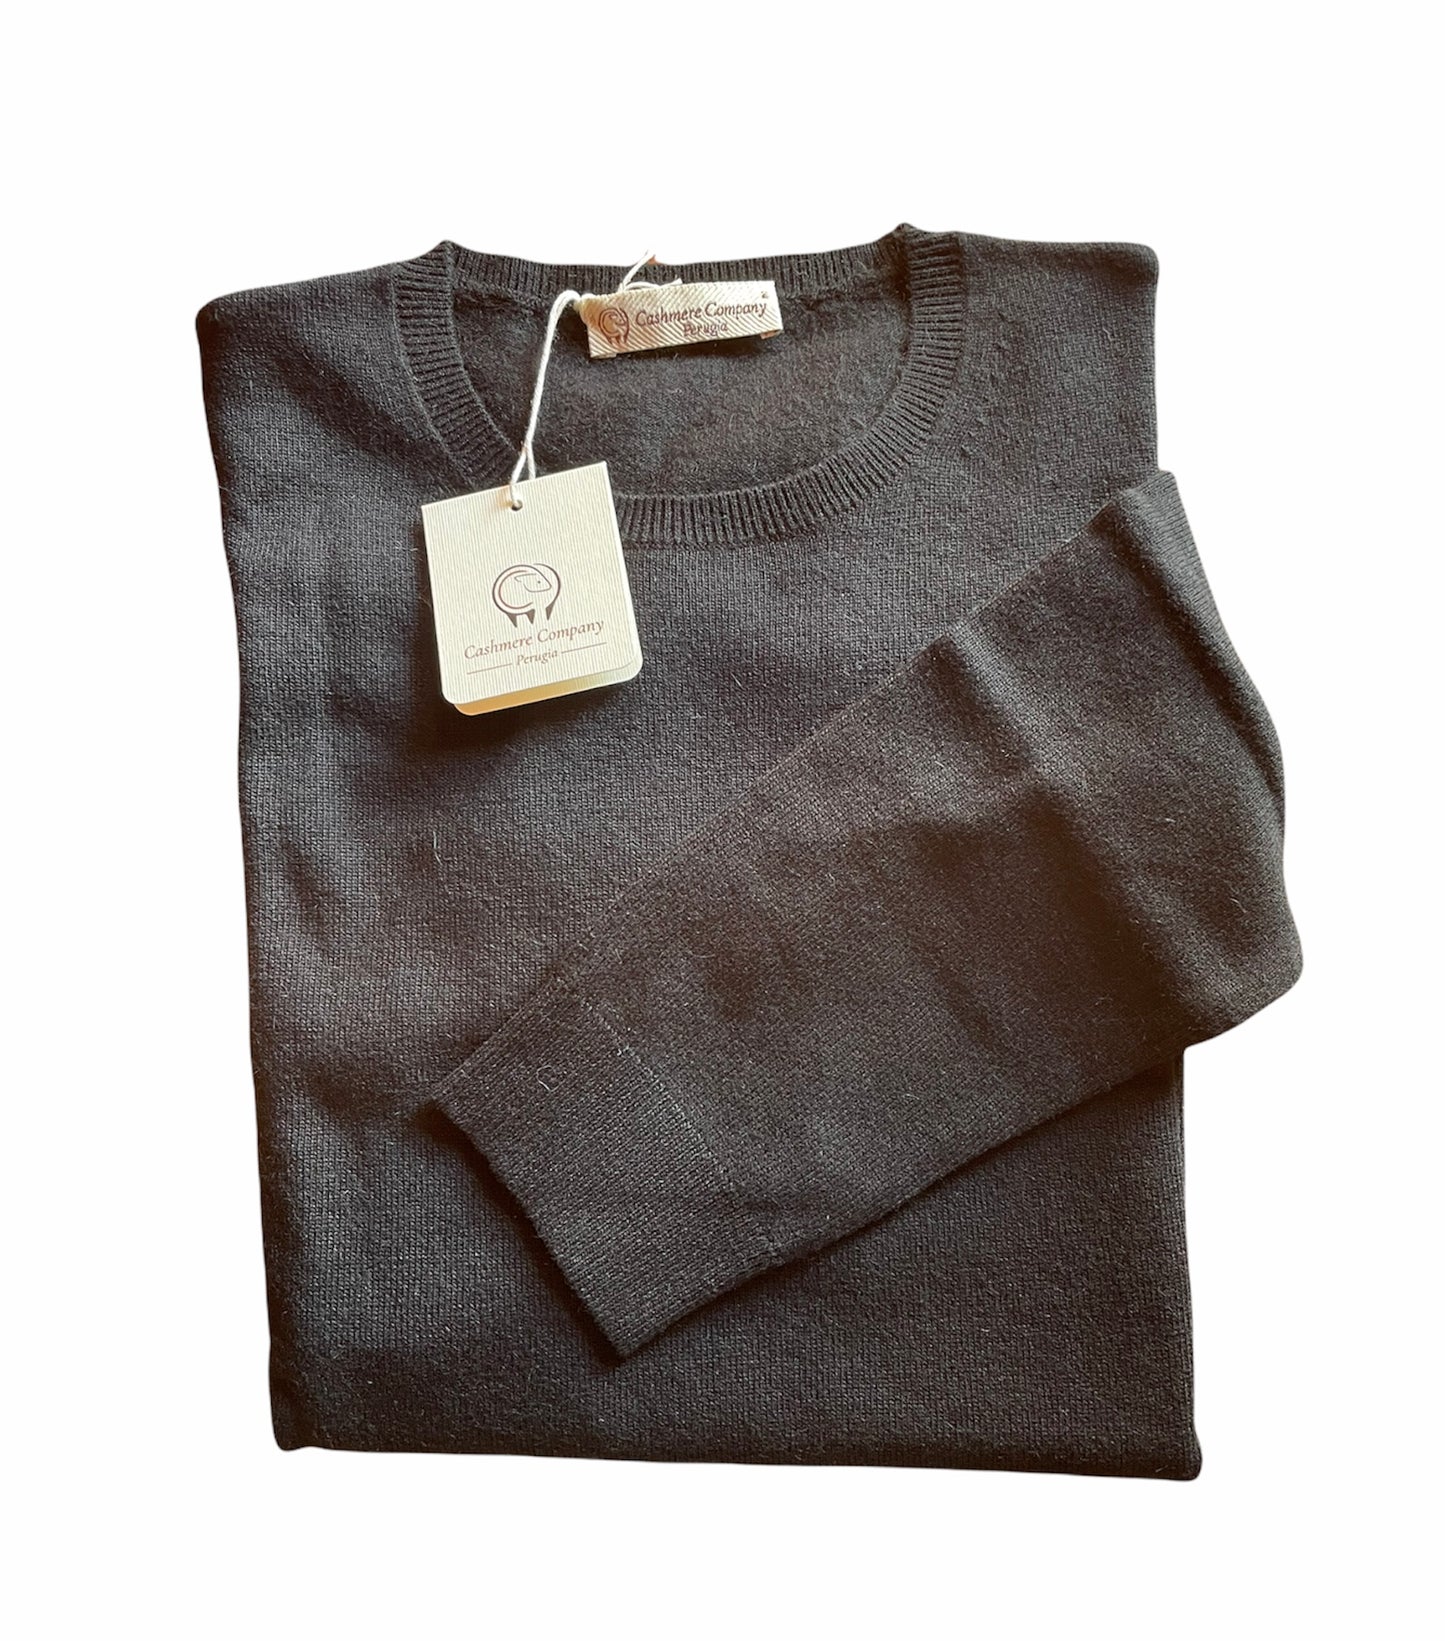 Cashmere Company maglia donna nero SC-50% girocollo maglione pullover manica lunga Cashmere e Lana Made in Italy